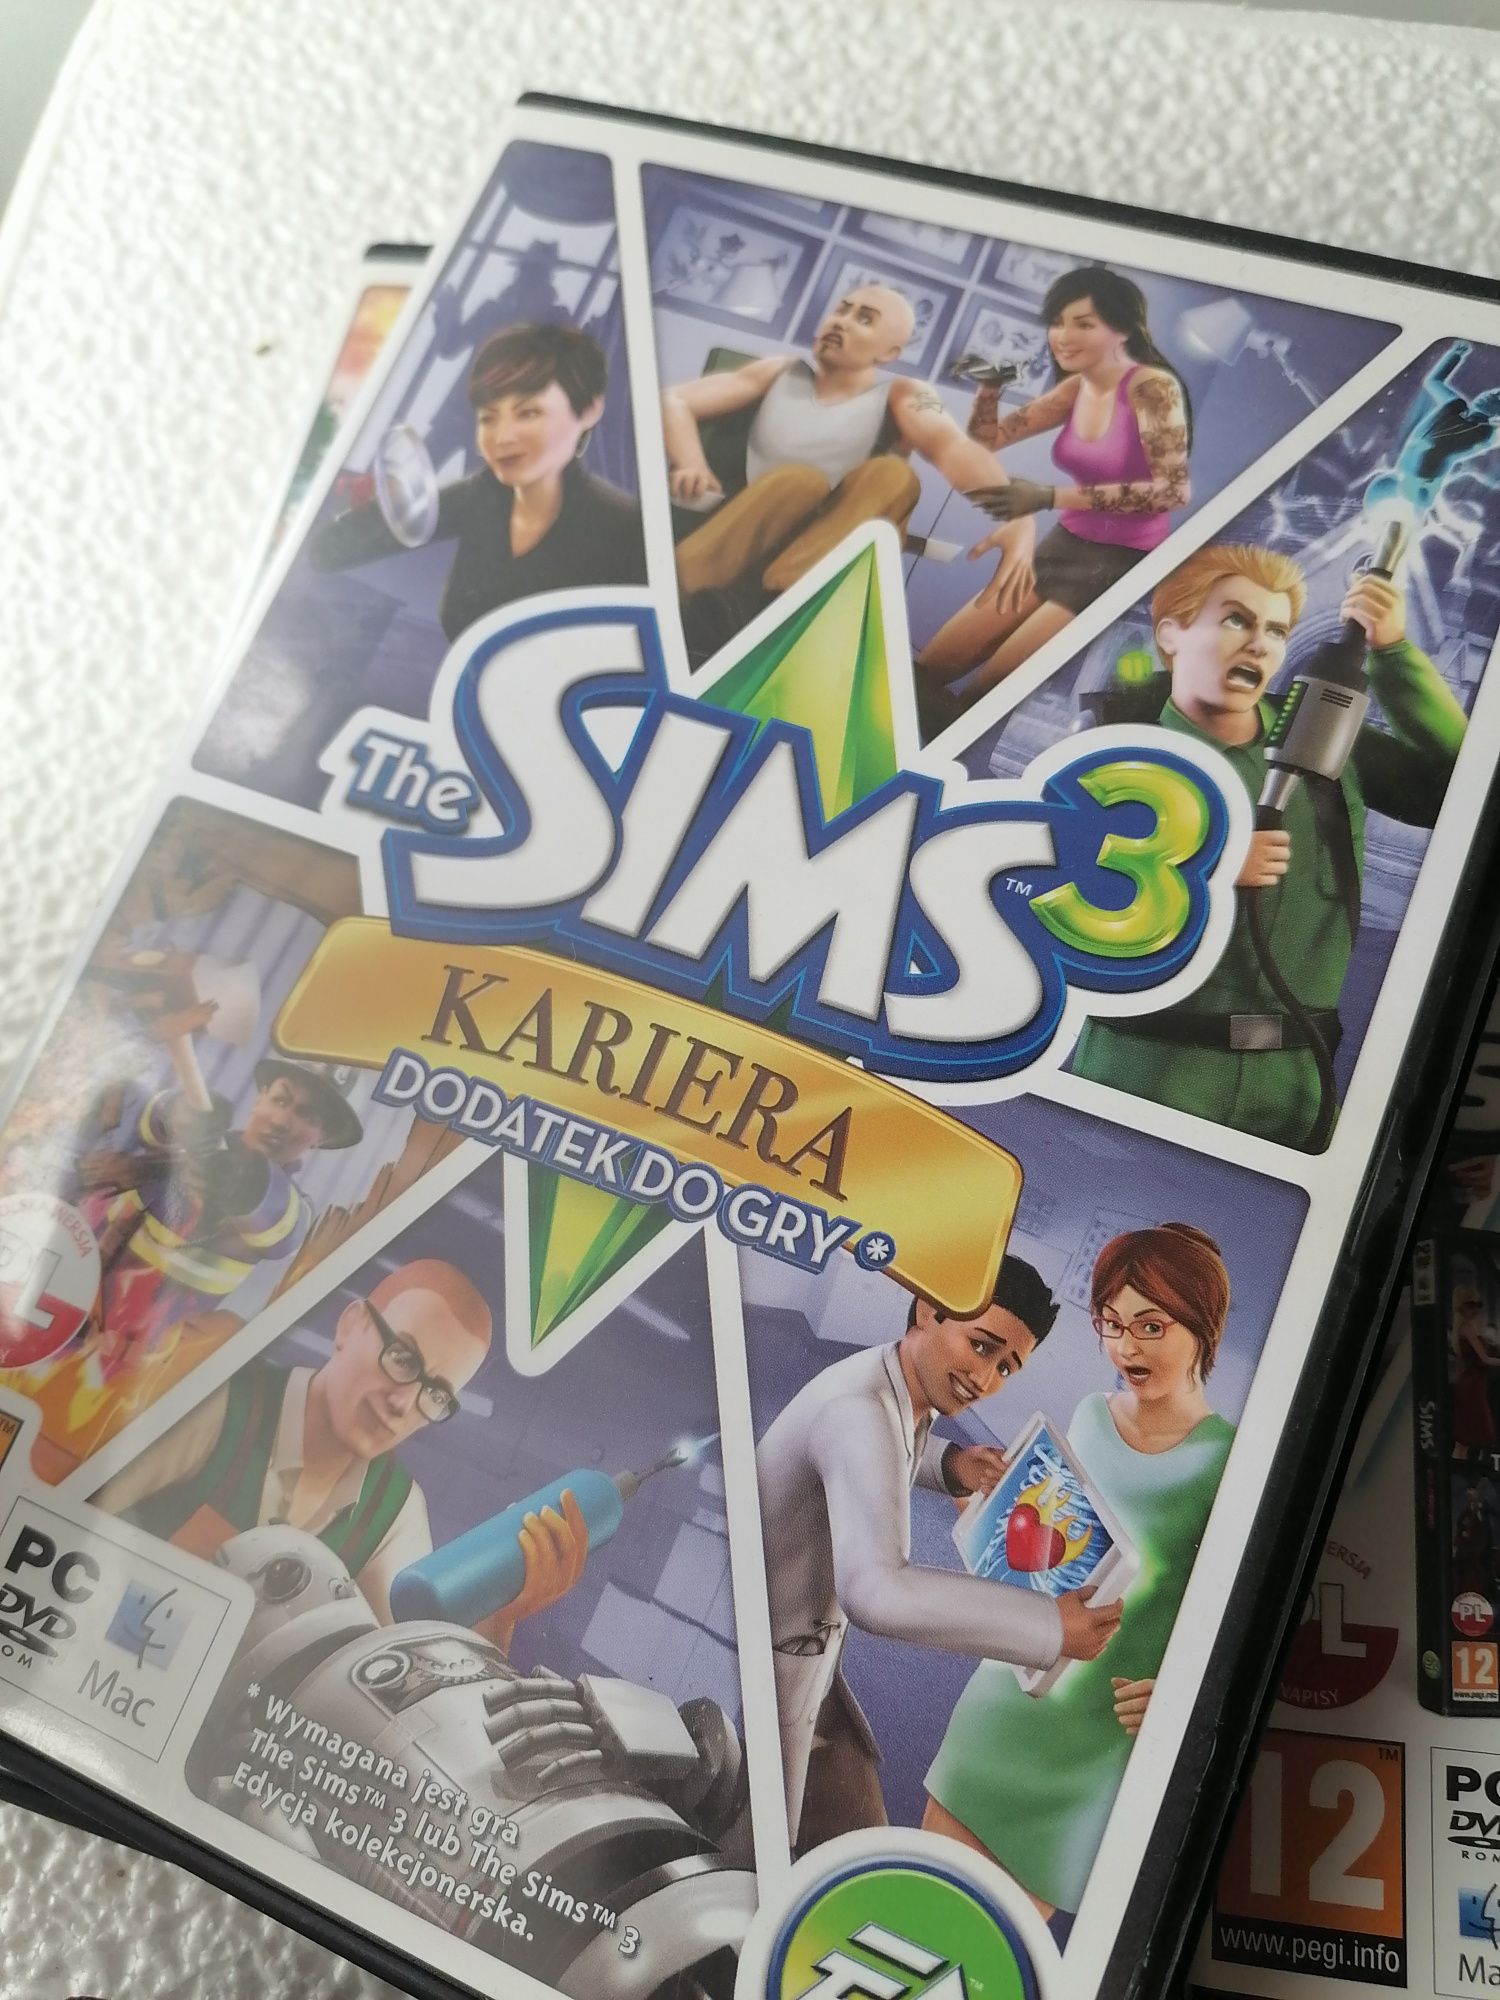 Sprzedam zestaw The Sims 2 i The Sims 3 dodatki gra